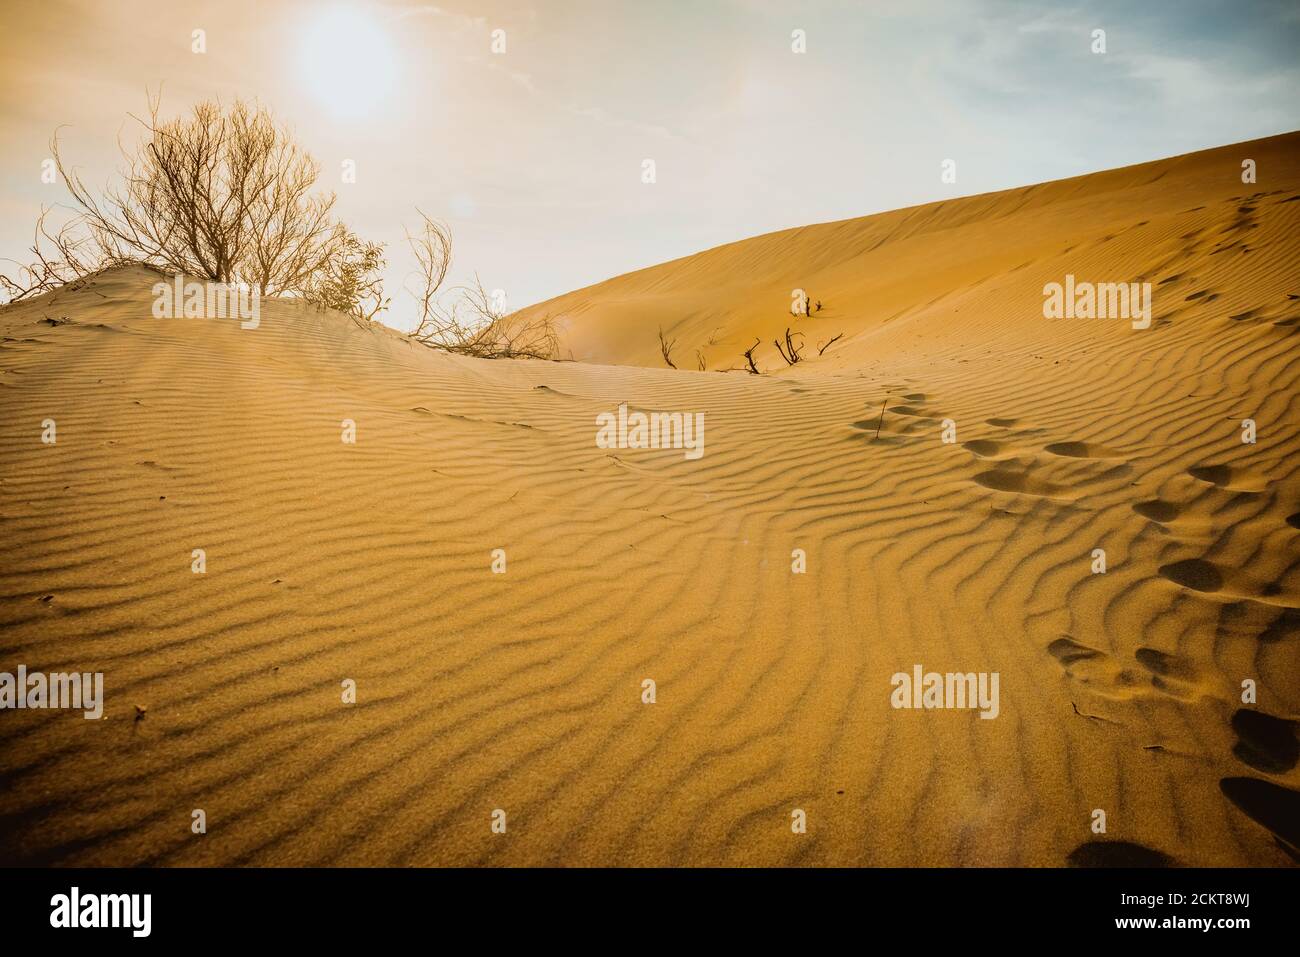 Sandy deserto arido sullo sfondo di un paesaggio Patara, Turchia Foto Stock